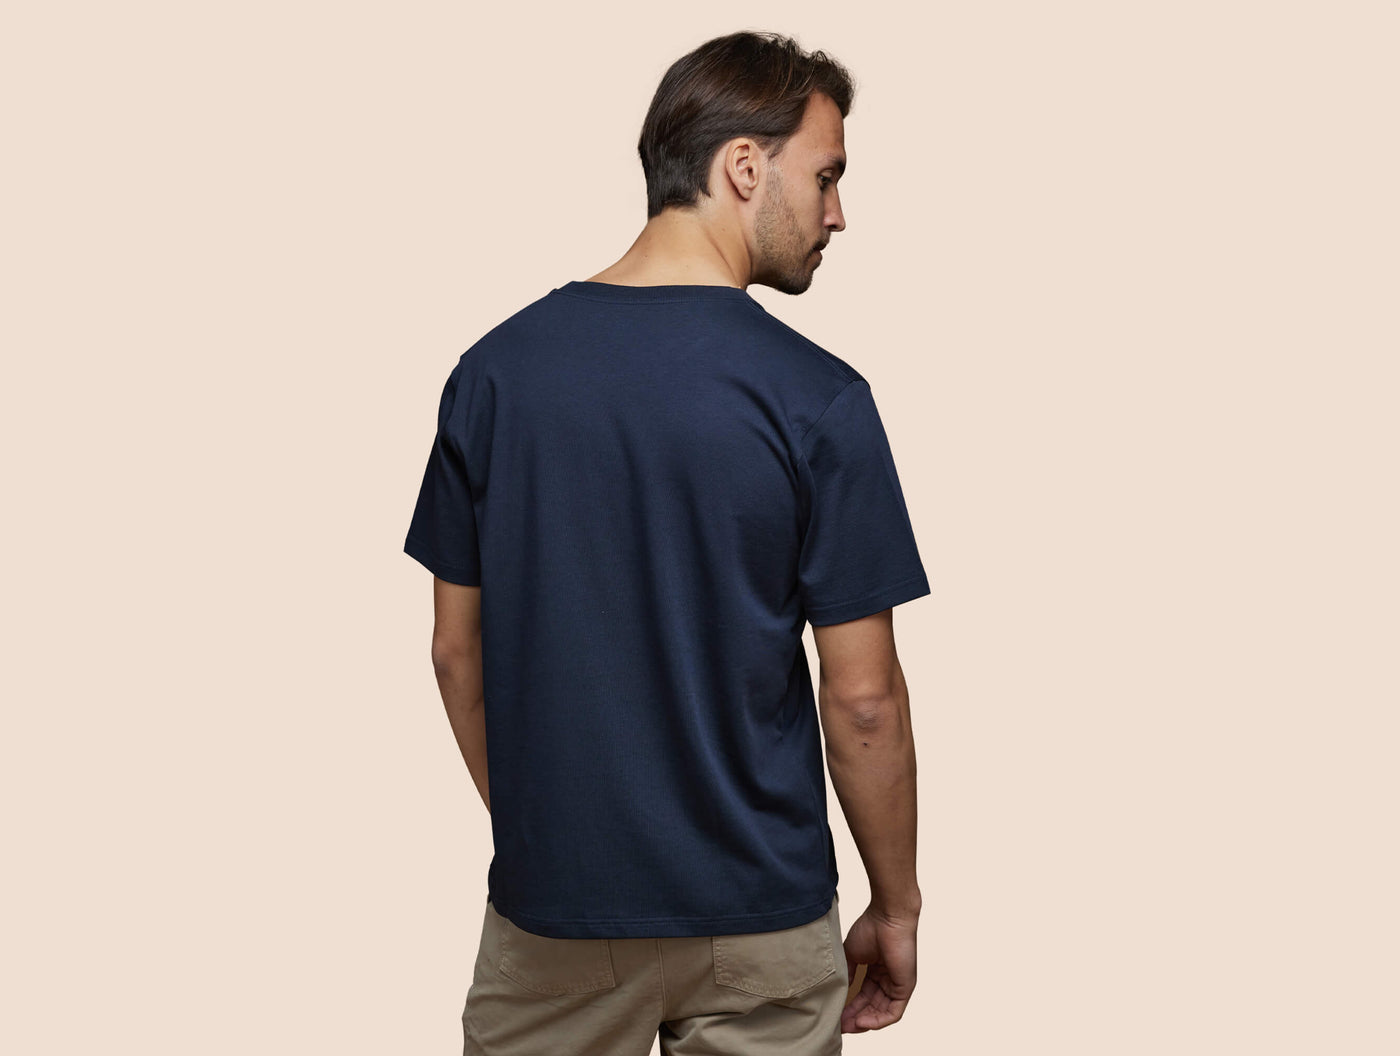 Pétrone T-shirt manches courtes coton pima micromodal bleu marine homme#couleur_bleu-marine